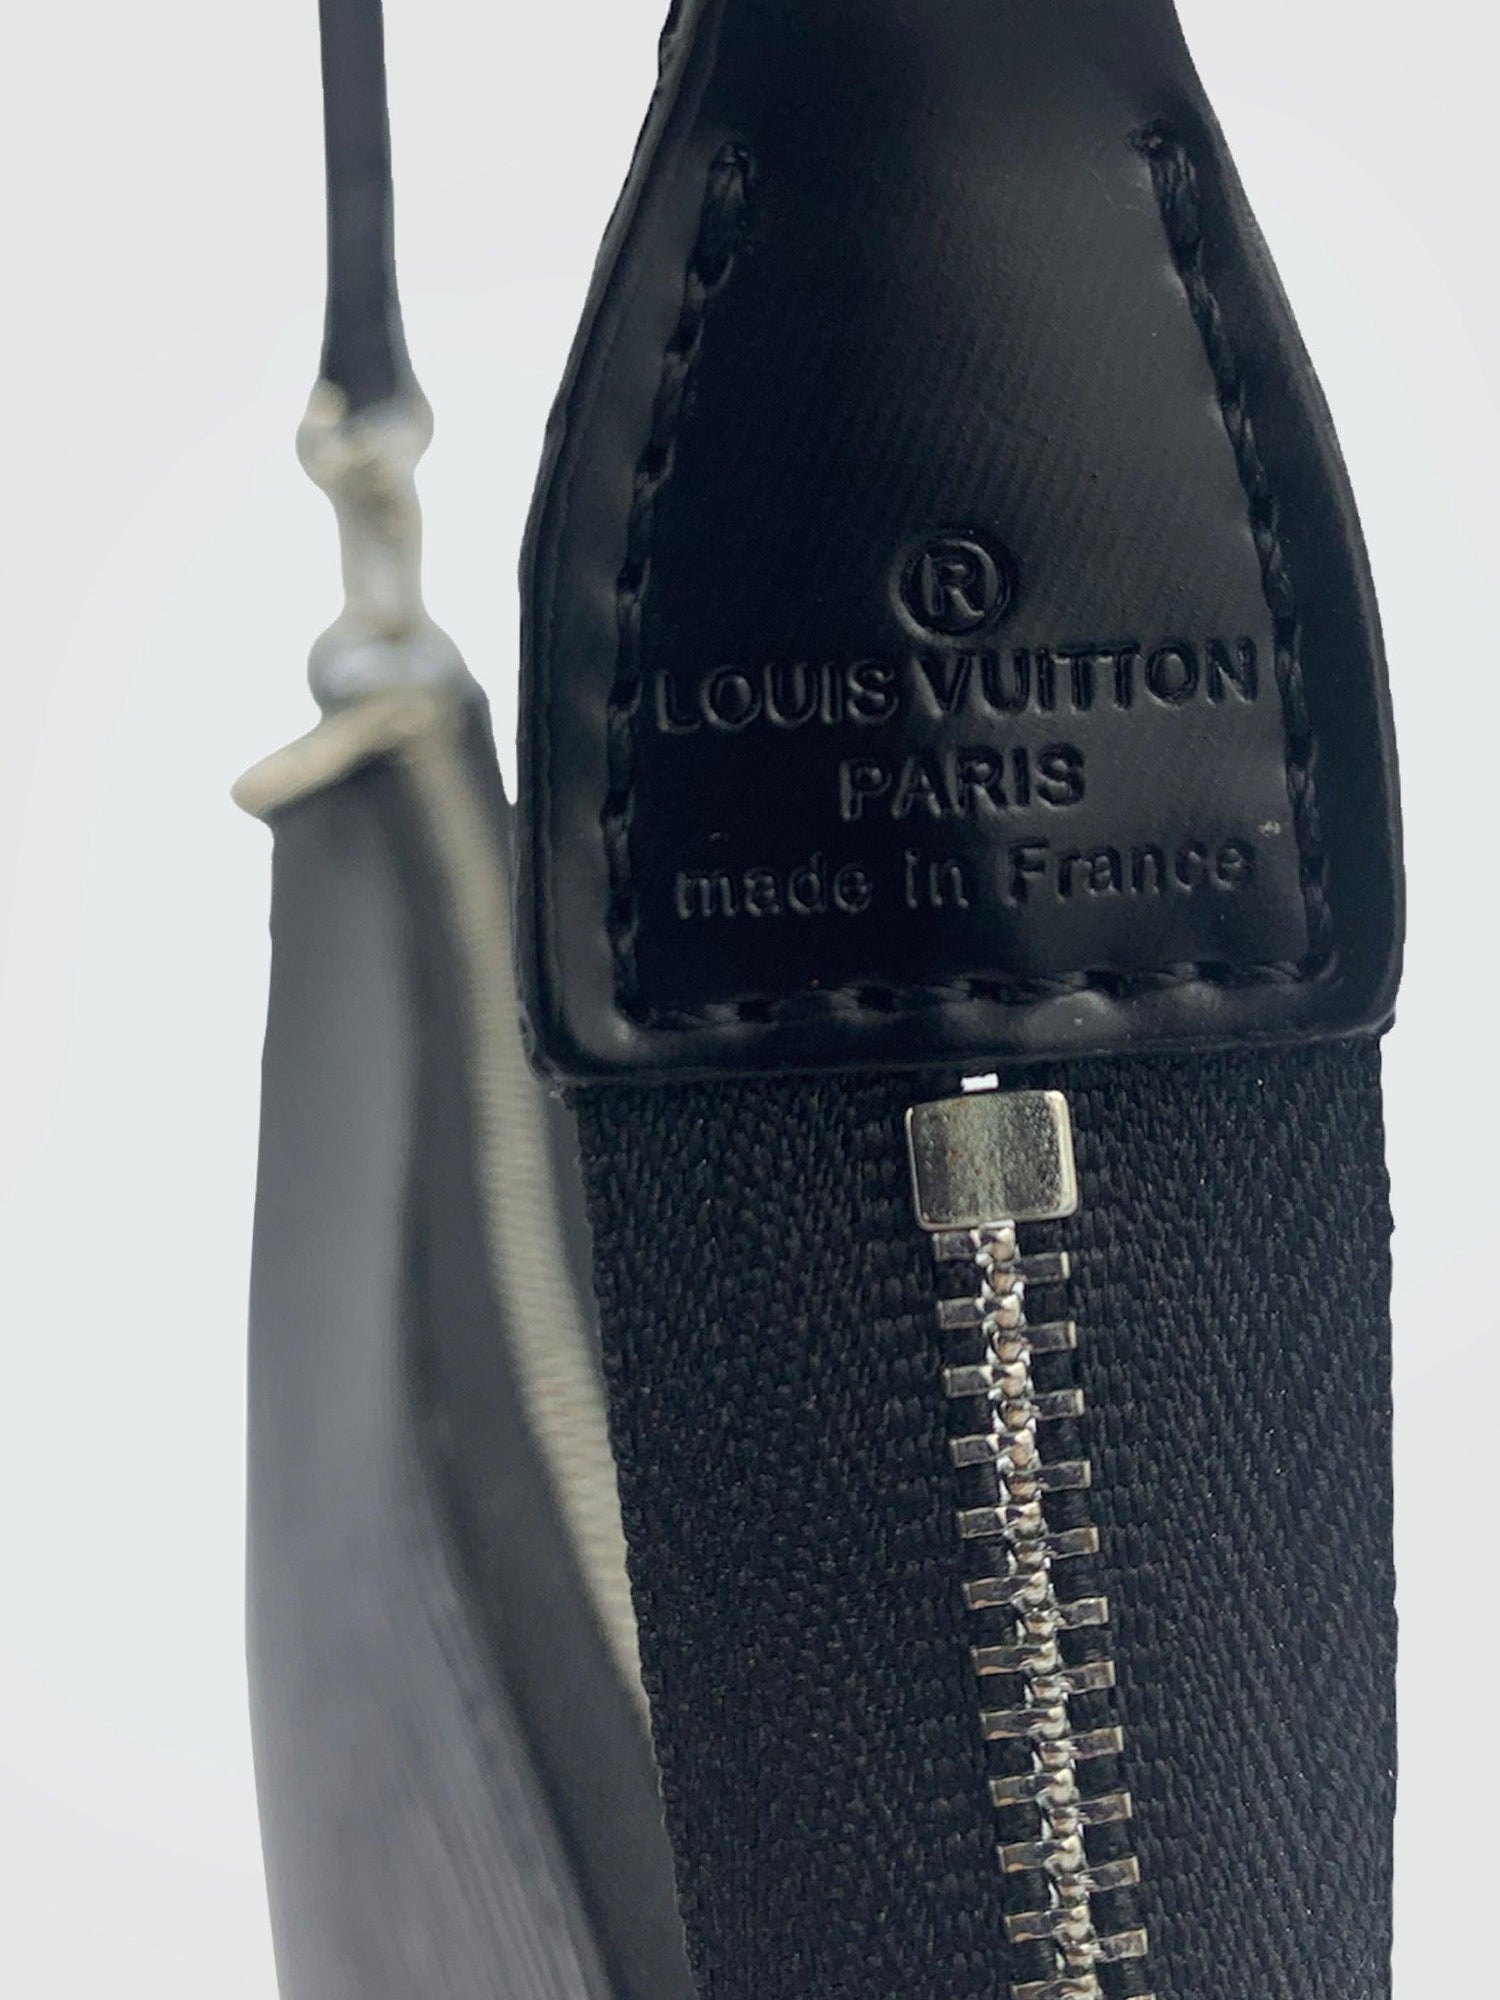 Louis Vuitton - Second Nature Boutique